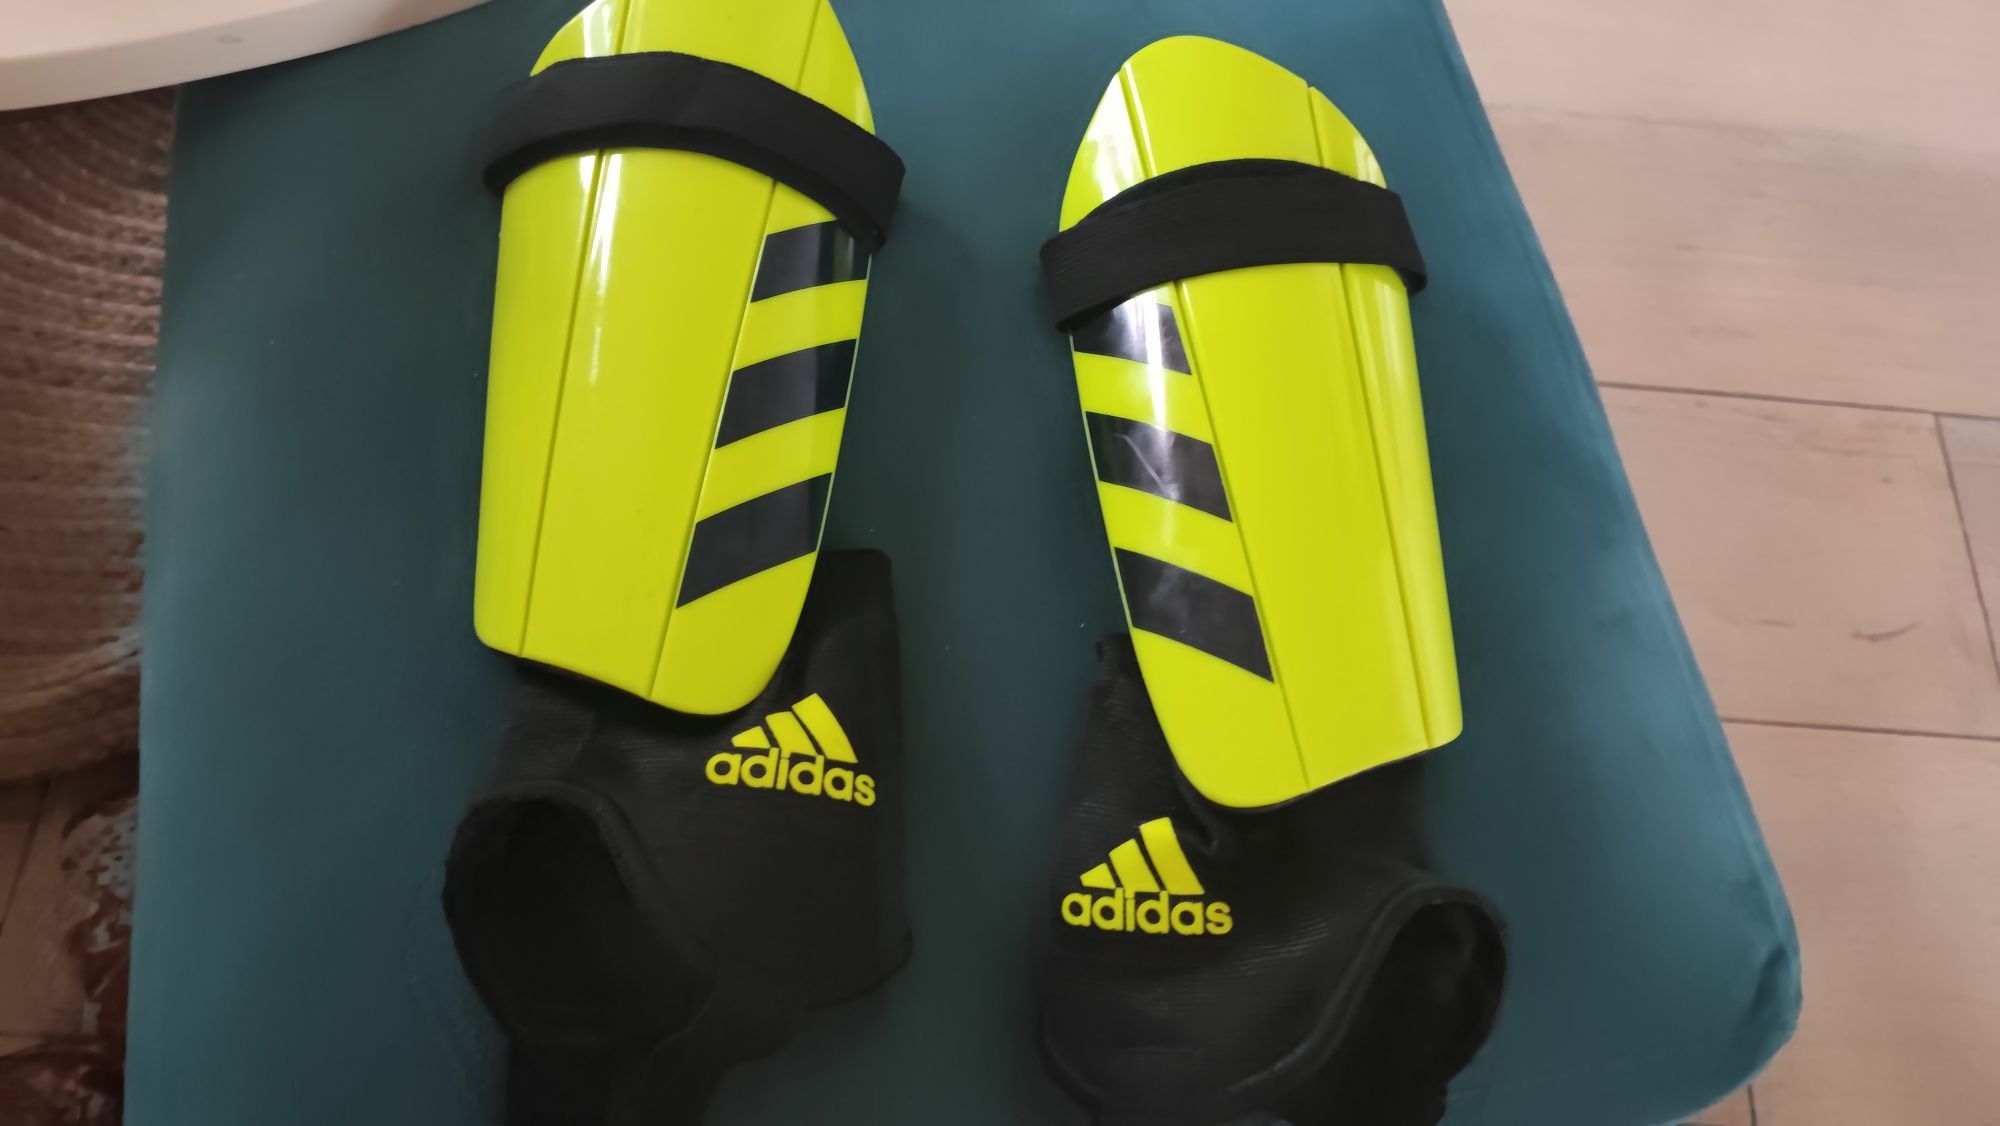 Adidas® nagolenniki / ochraniacze  piłkarskie